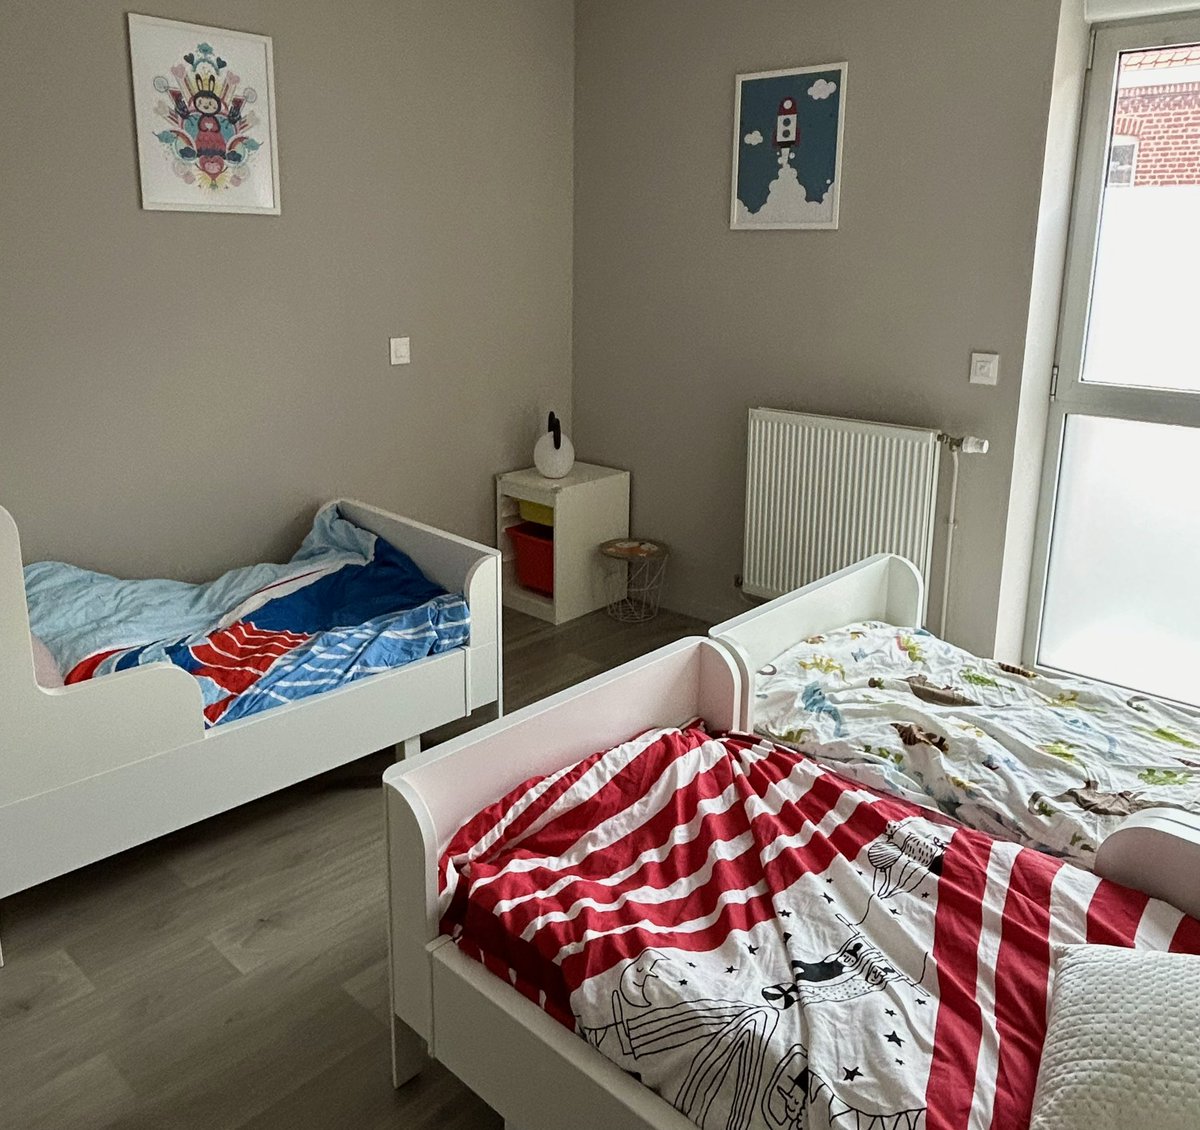 C’est une première en France ! Le Département du Nord a ouvert mi-avril une maison d’accueil pour les enfants de l’ASE dans le logement de fonction vacant d’un collège. La mobilisation de tous permet de construire des solutions innovantes et pragmatiques.